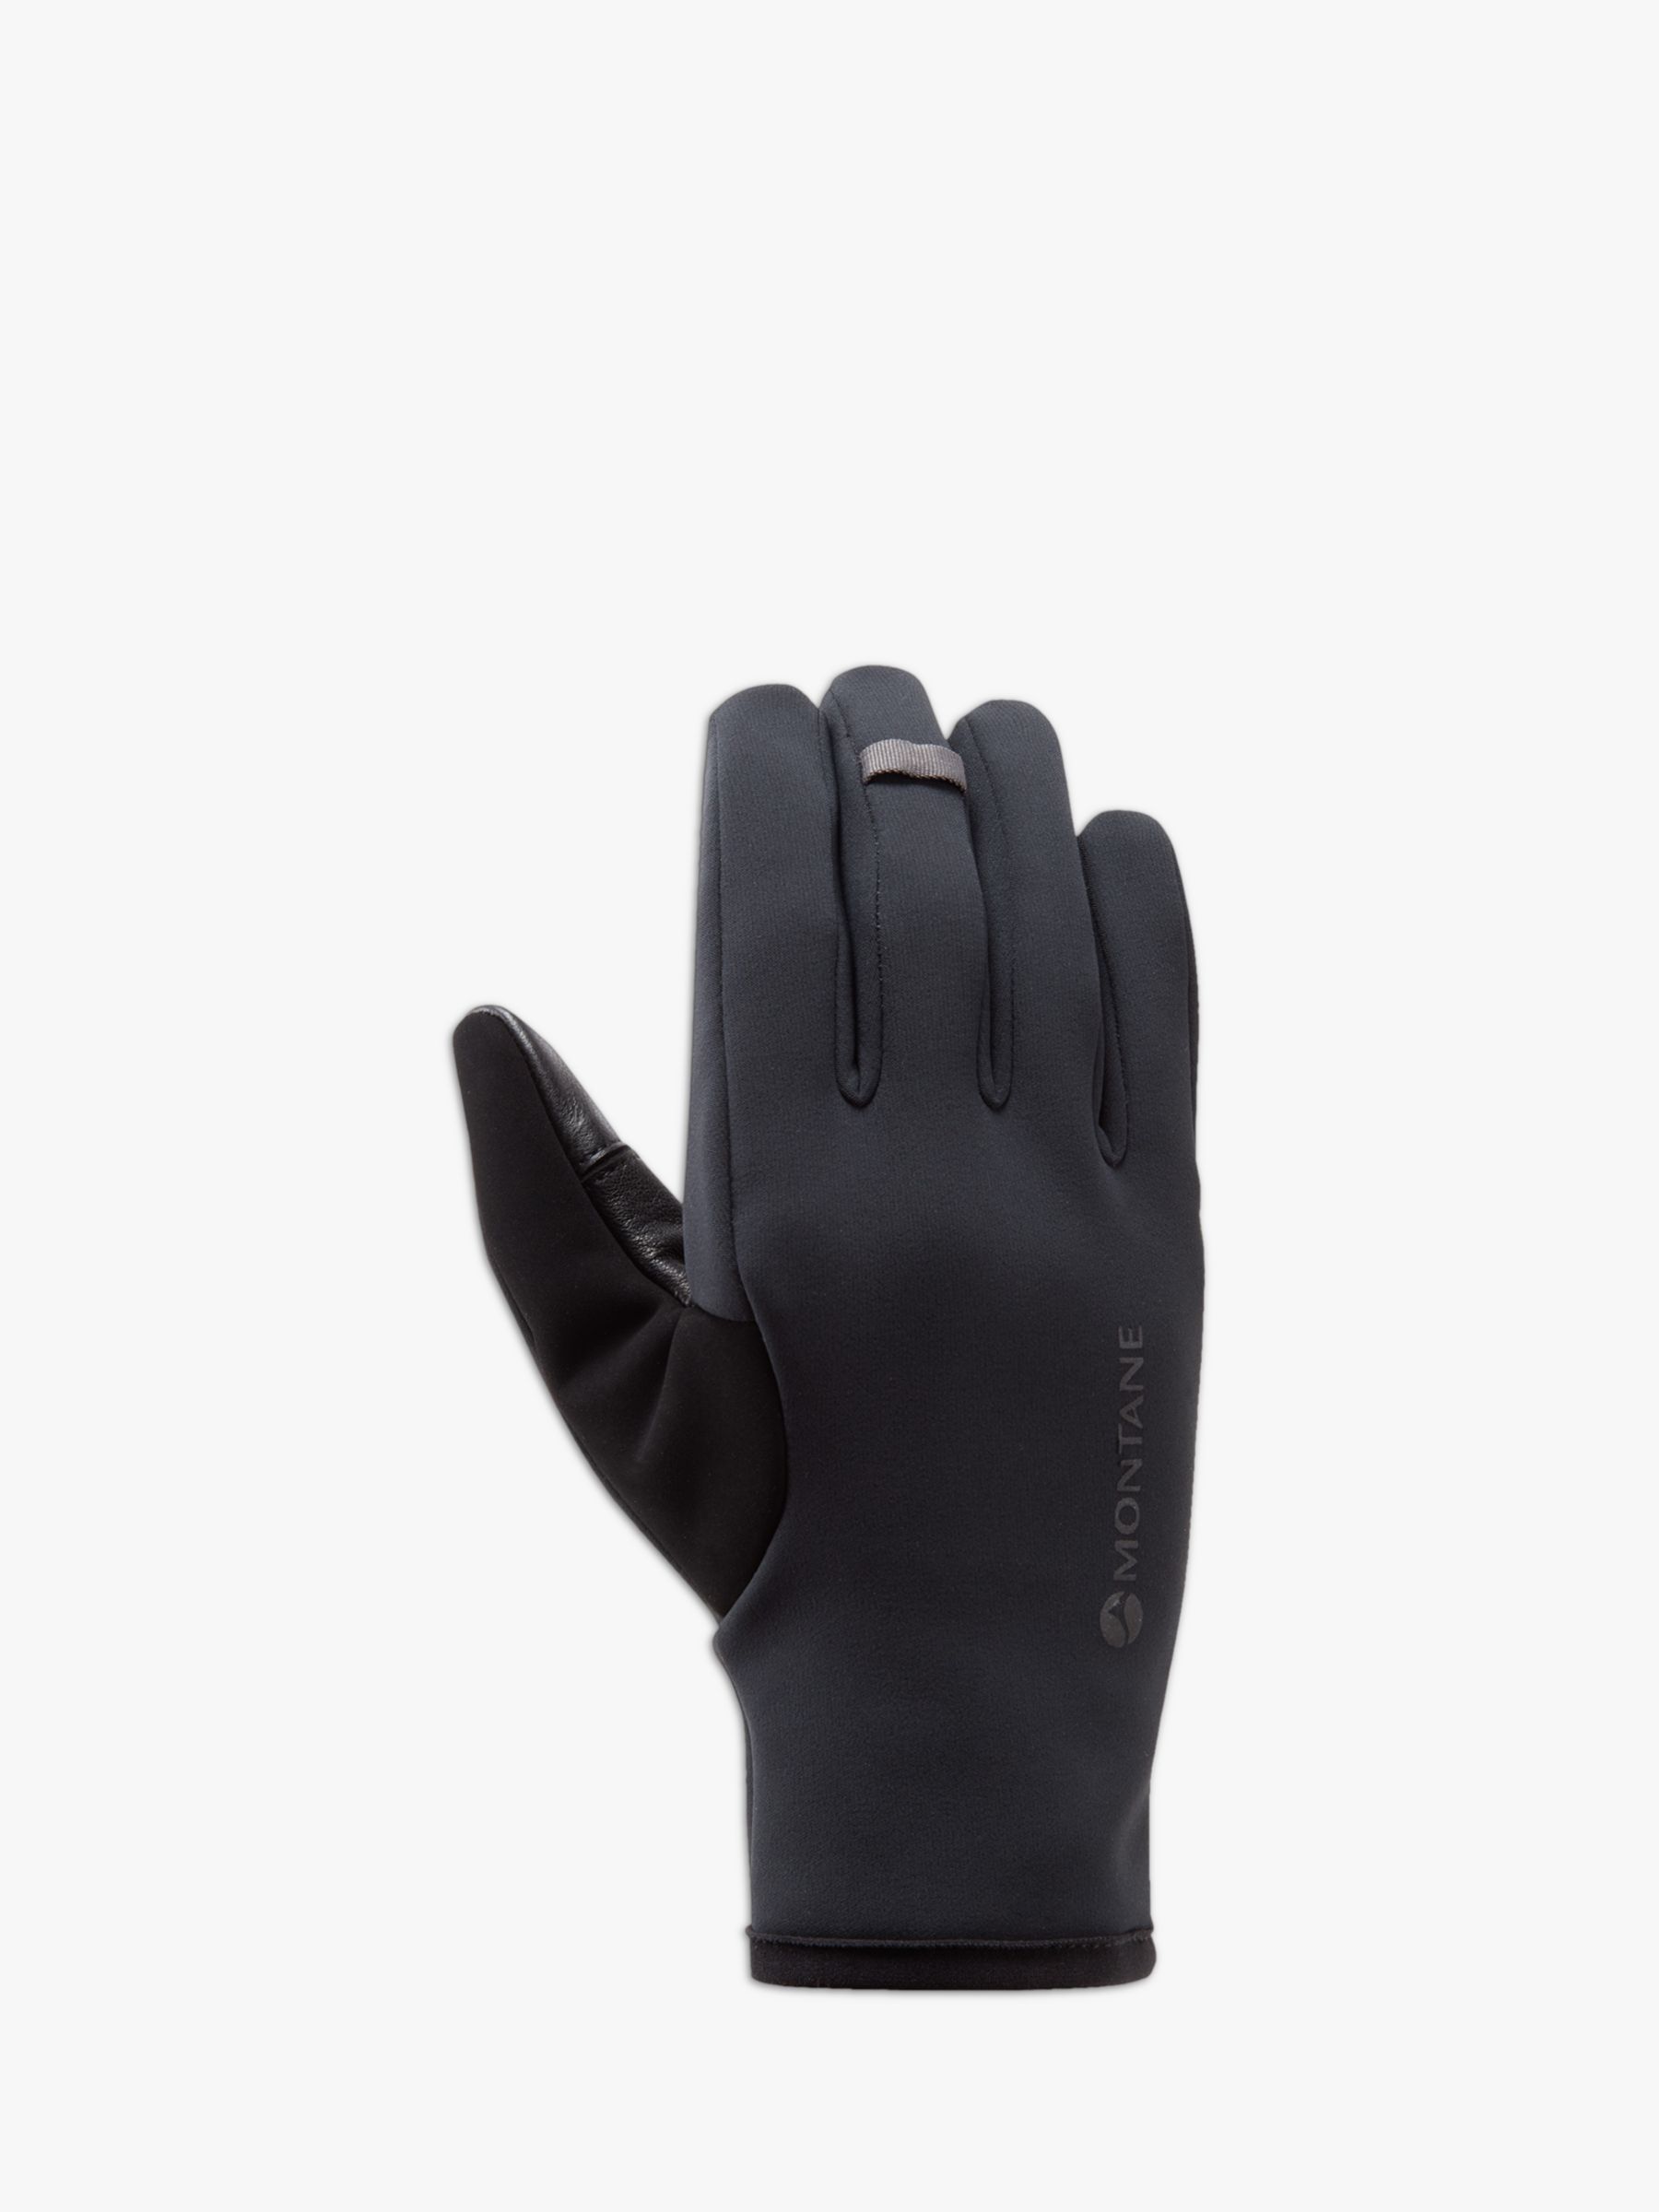 Montane Men's Windjammer Lite Windproof Gloves, Black, S